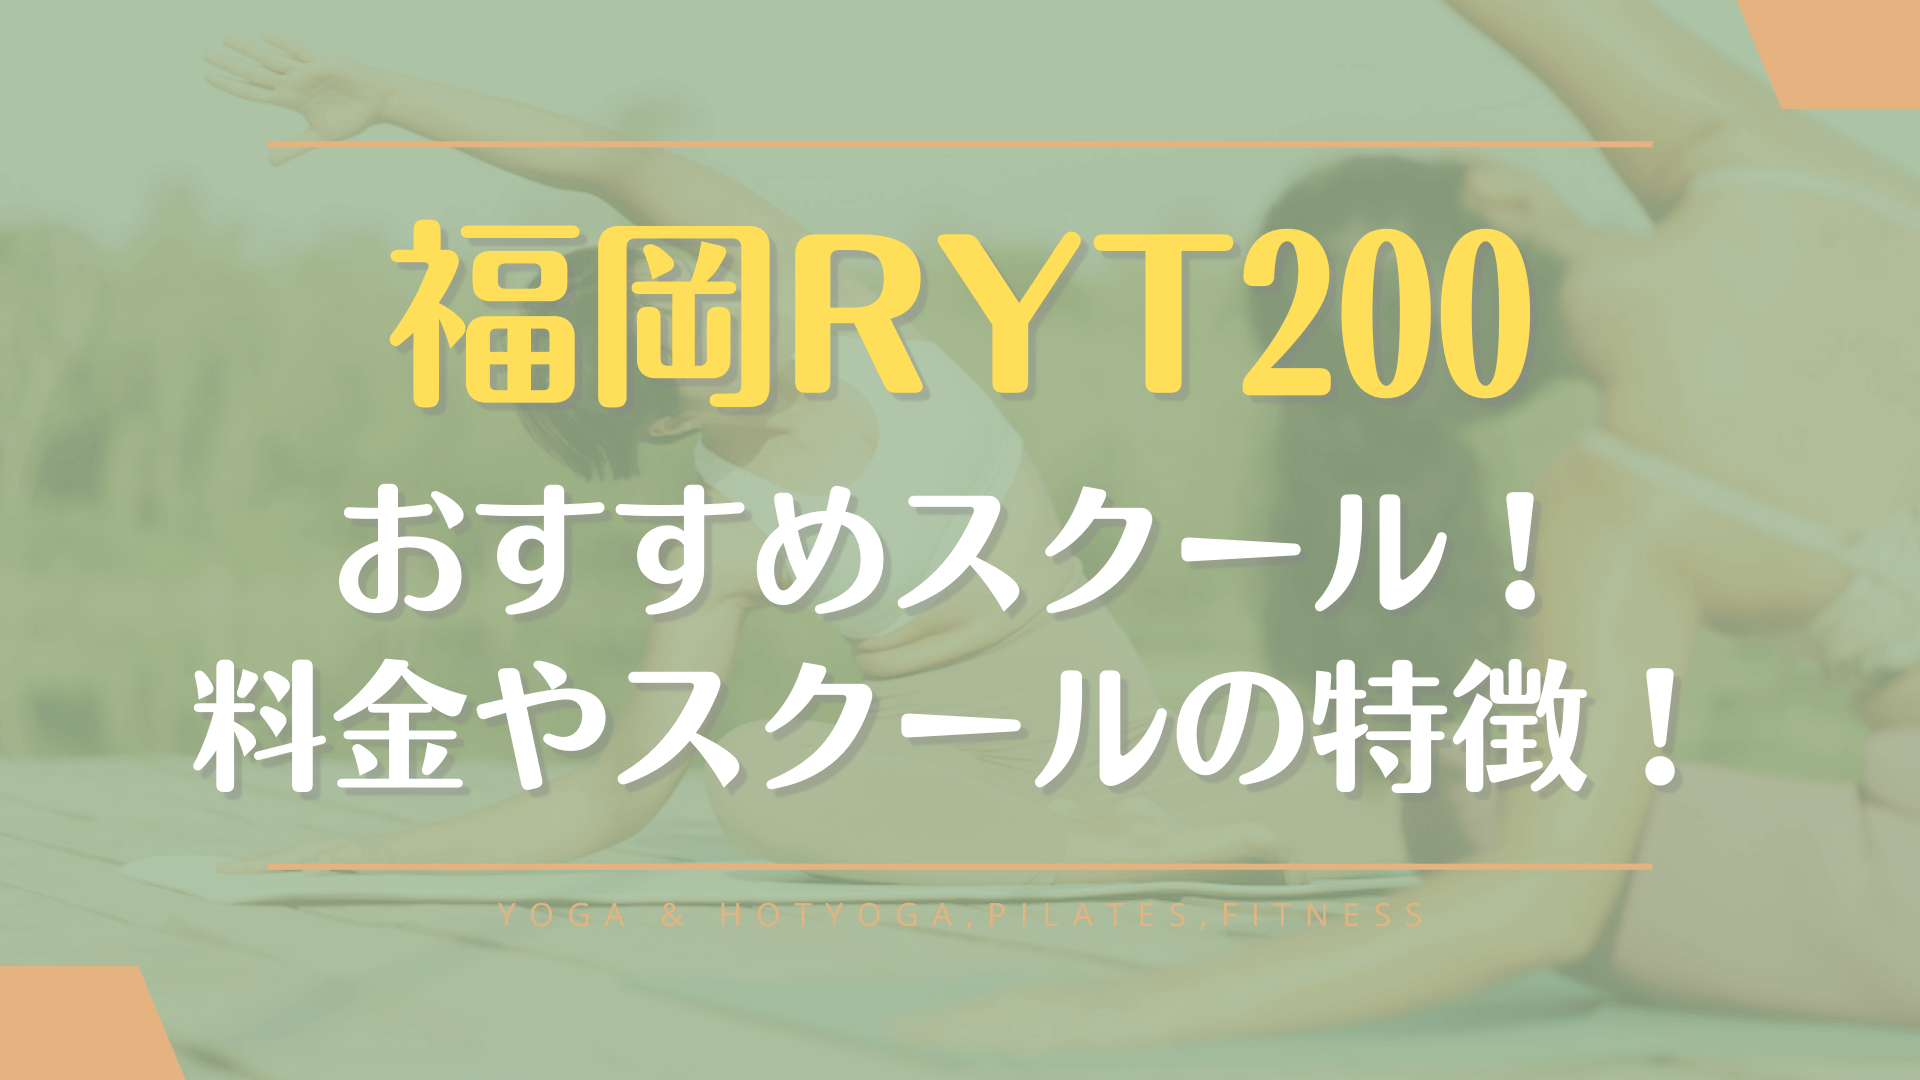 福岡でRYT200のヨガ資格が取れるおすすめスクールを厳選紹介